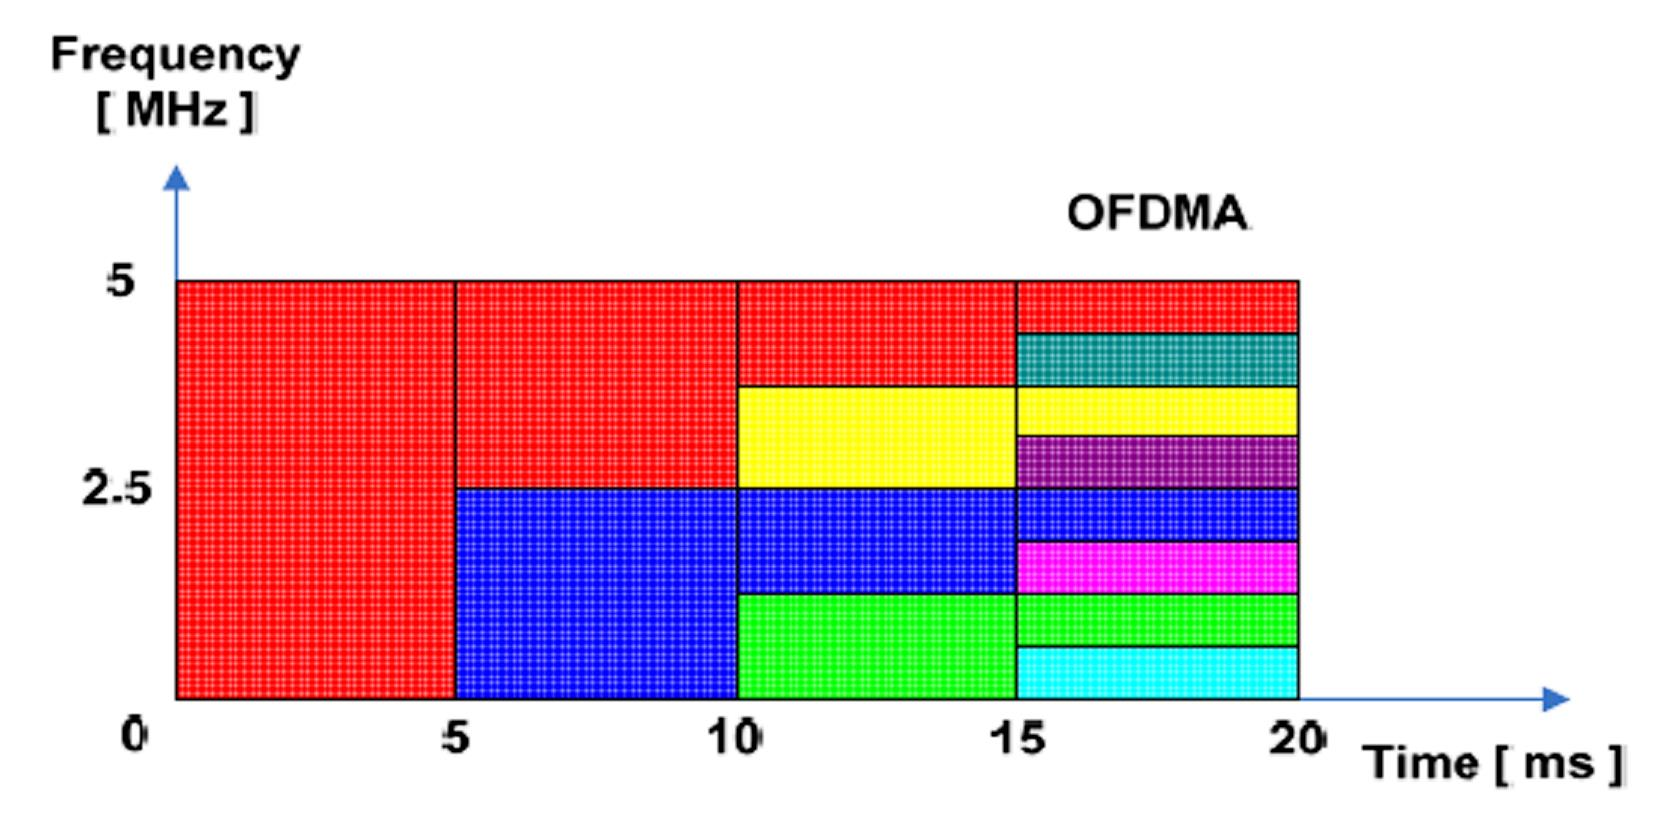 OFDMA Κάθε χρήστης κατέχει ένα υποσύνολο συχνοτήτων για κάποιο χρονικό διάστημα Σε κάθε χρονικό διάστημα οι χρήστες δε